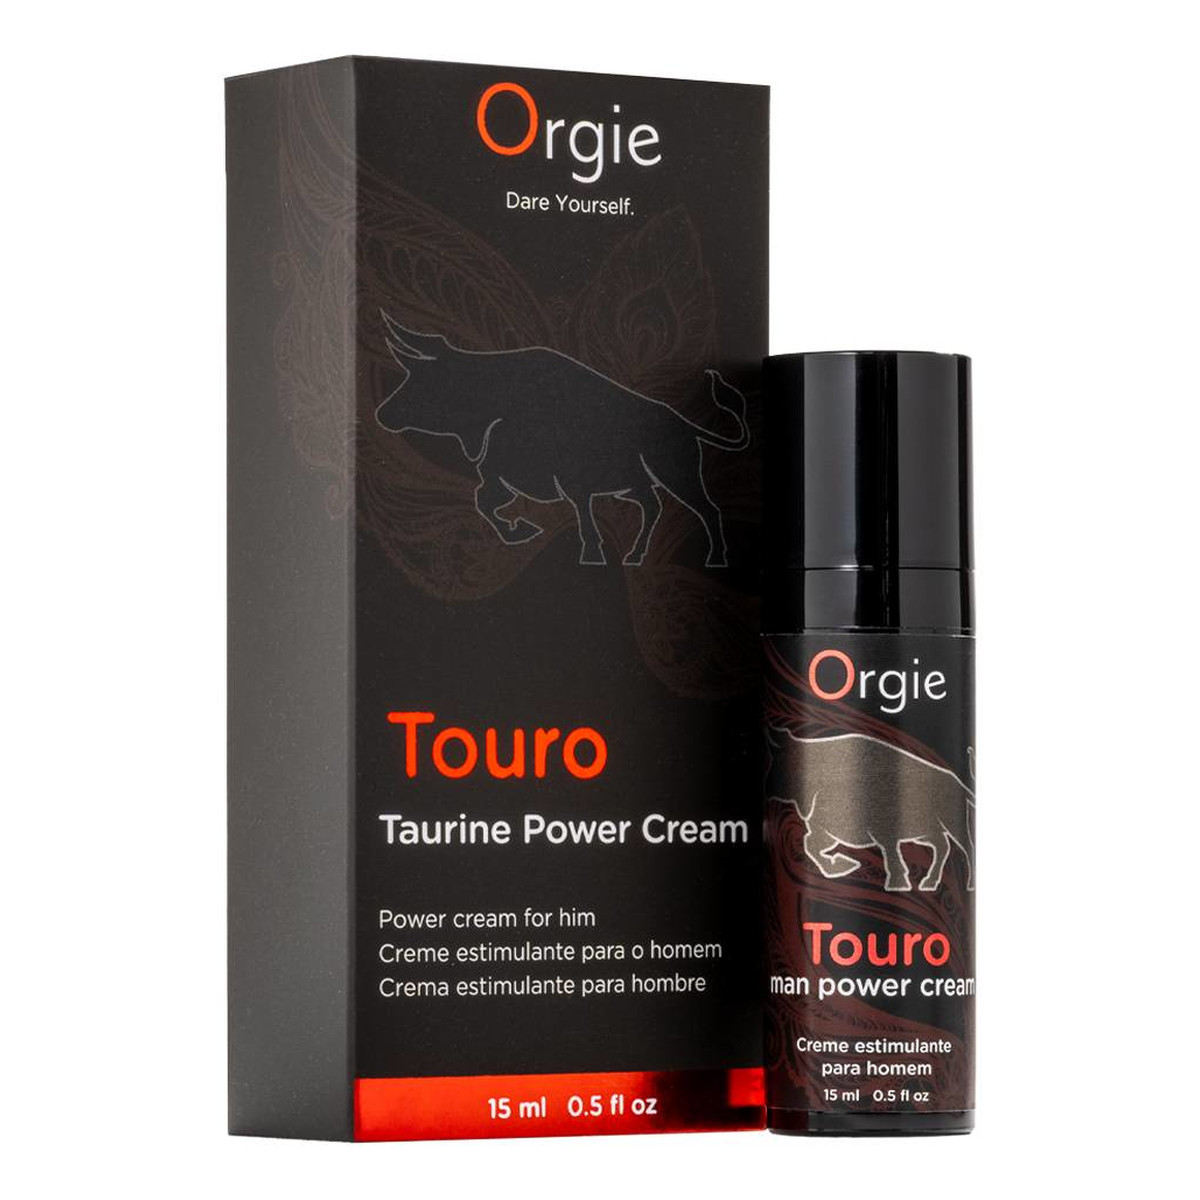 Orgie Touro Taurine Power Cream Krem wzmacniający erekcję 15ml